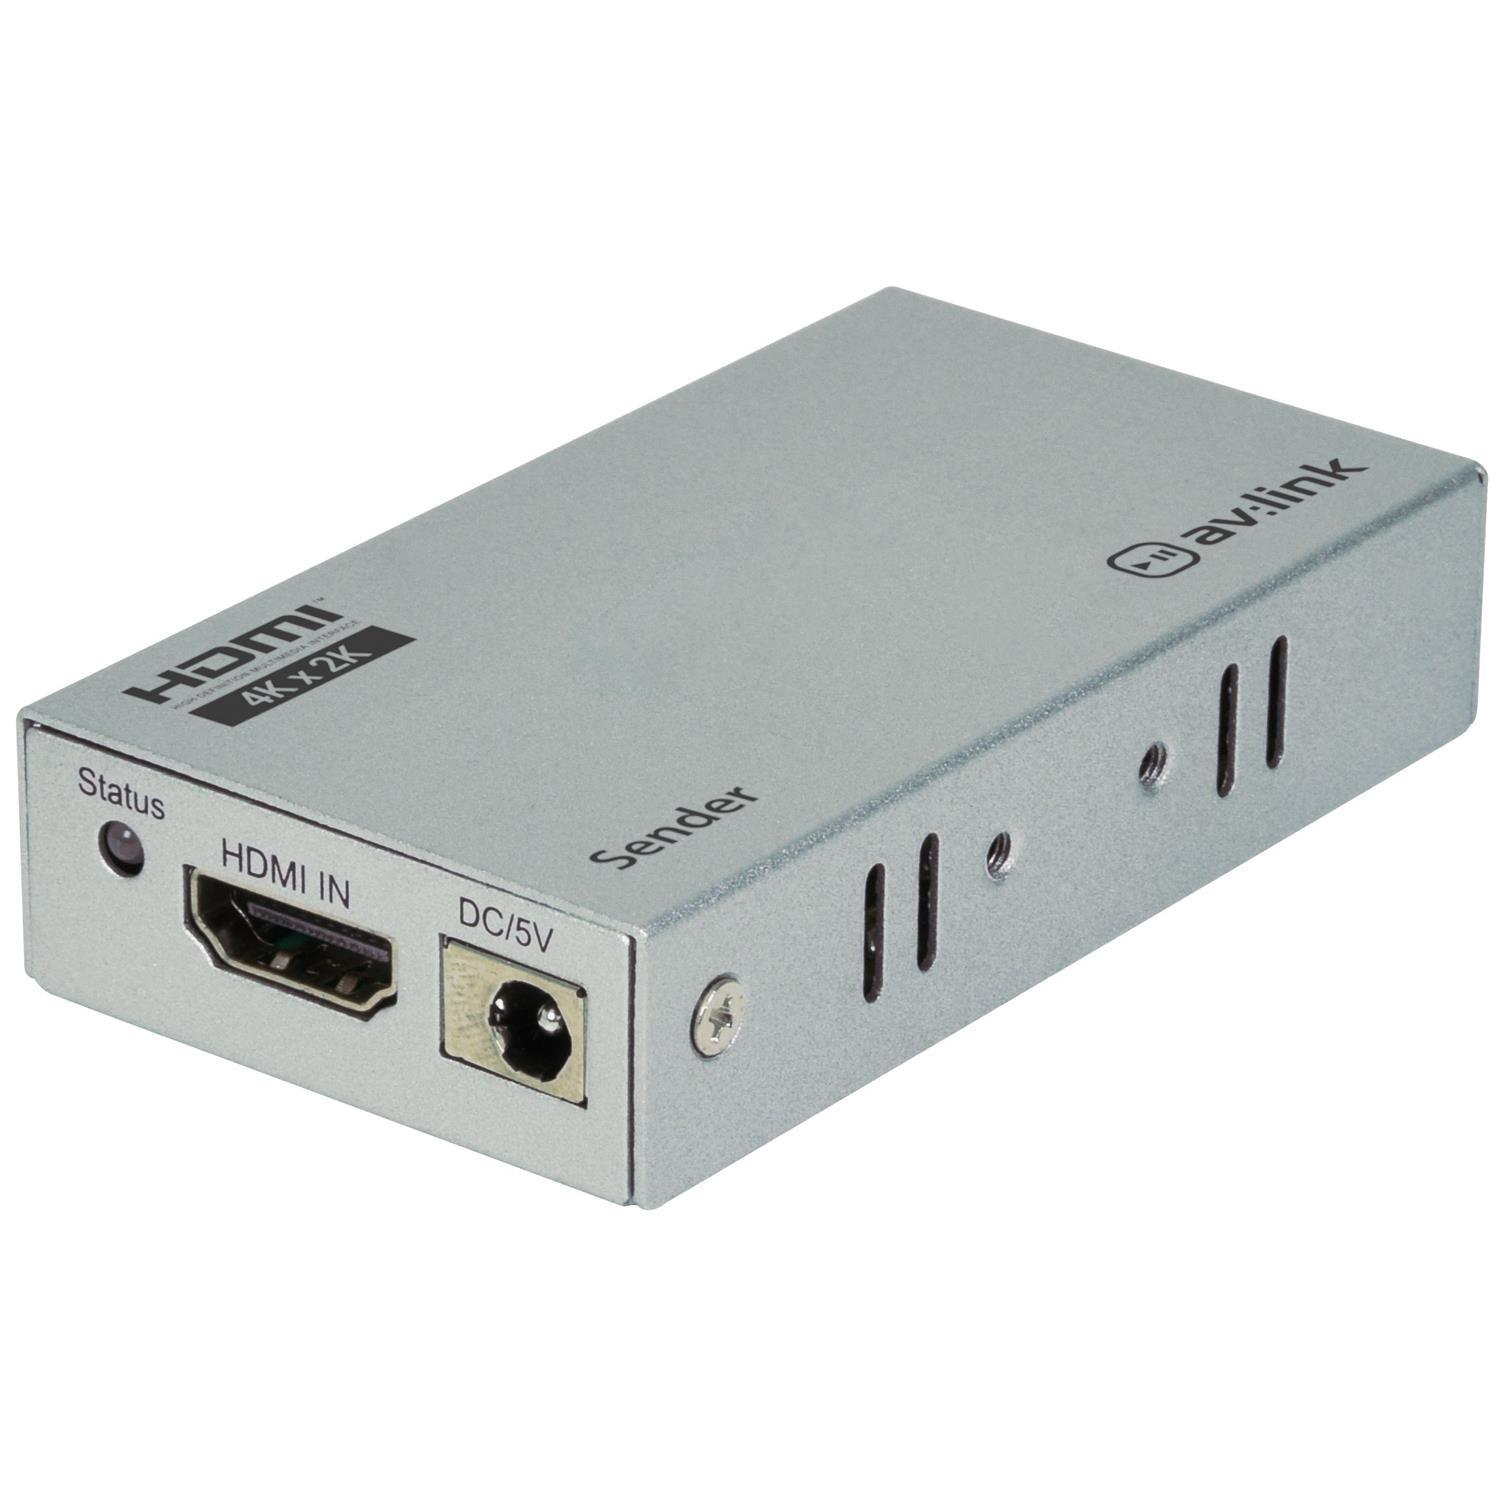 av:link 100m Range 4K HDMI Extender Over Ethernet Kit - DY Pro Audio